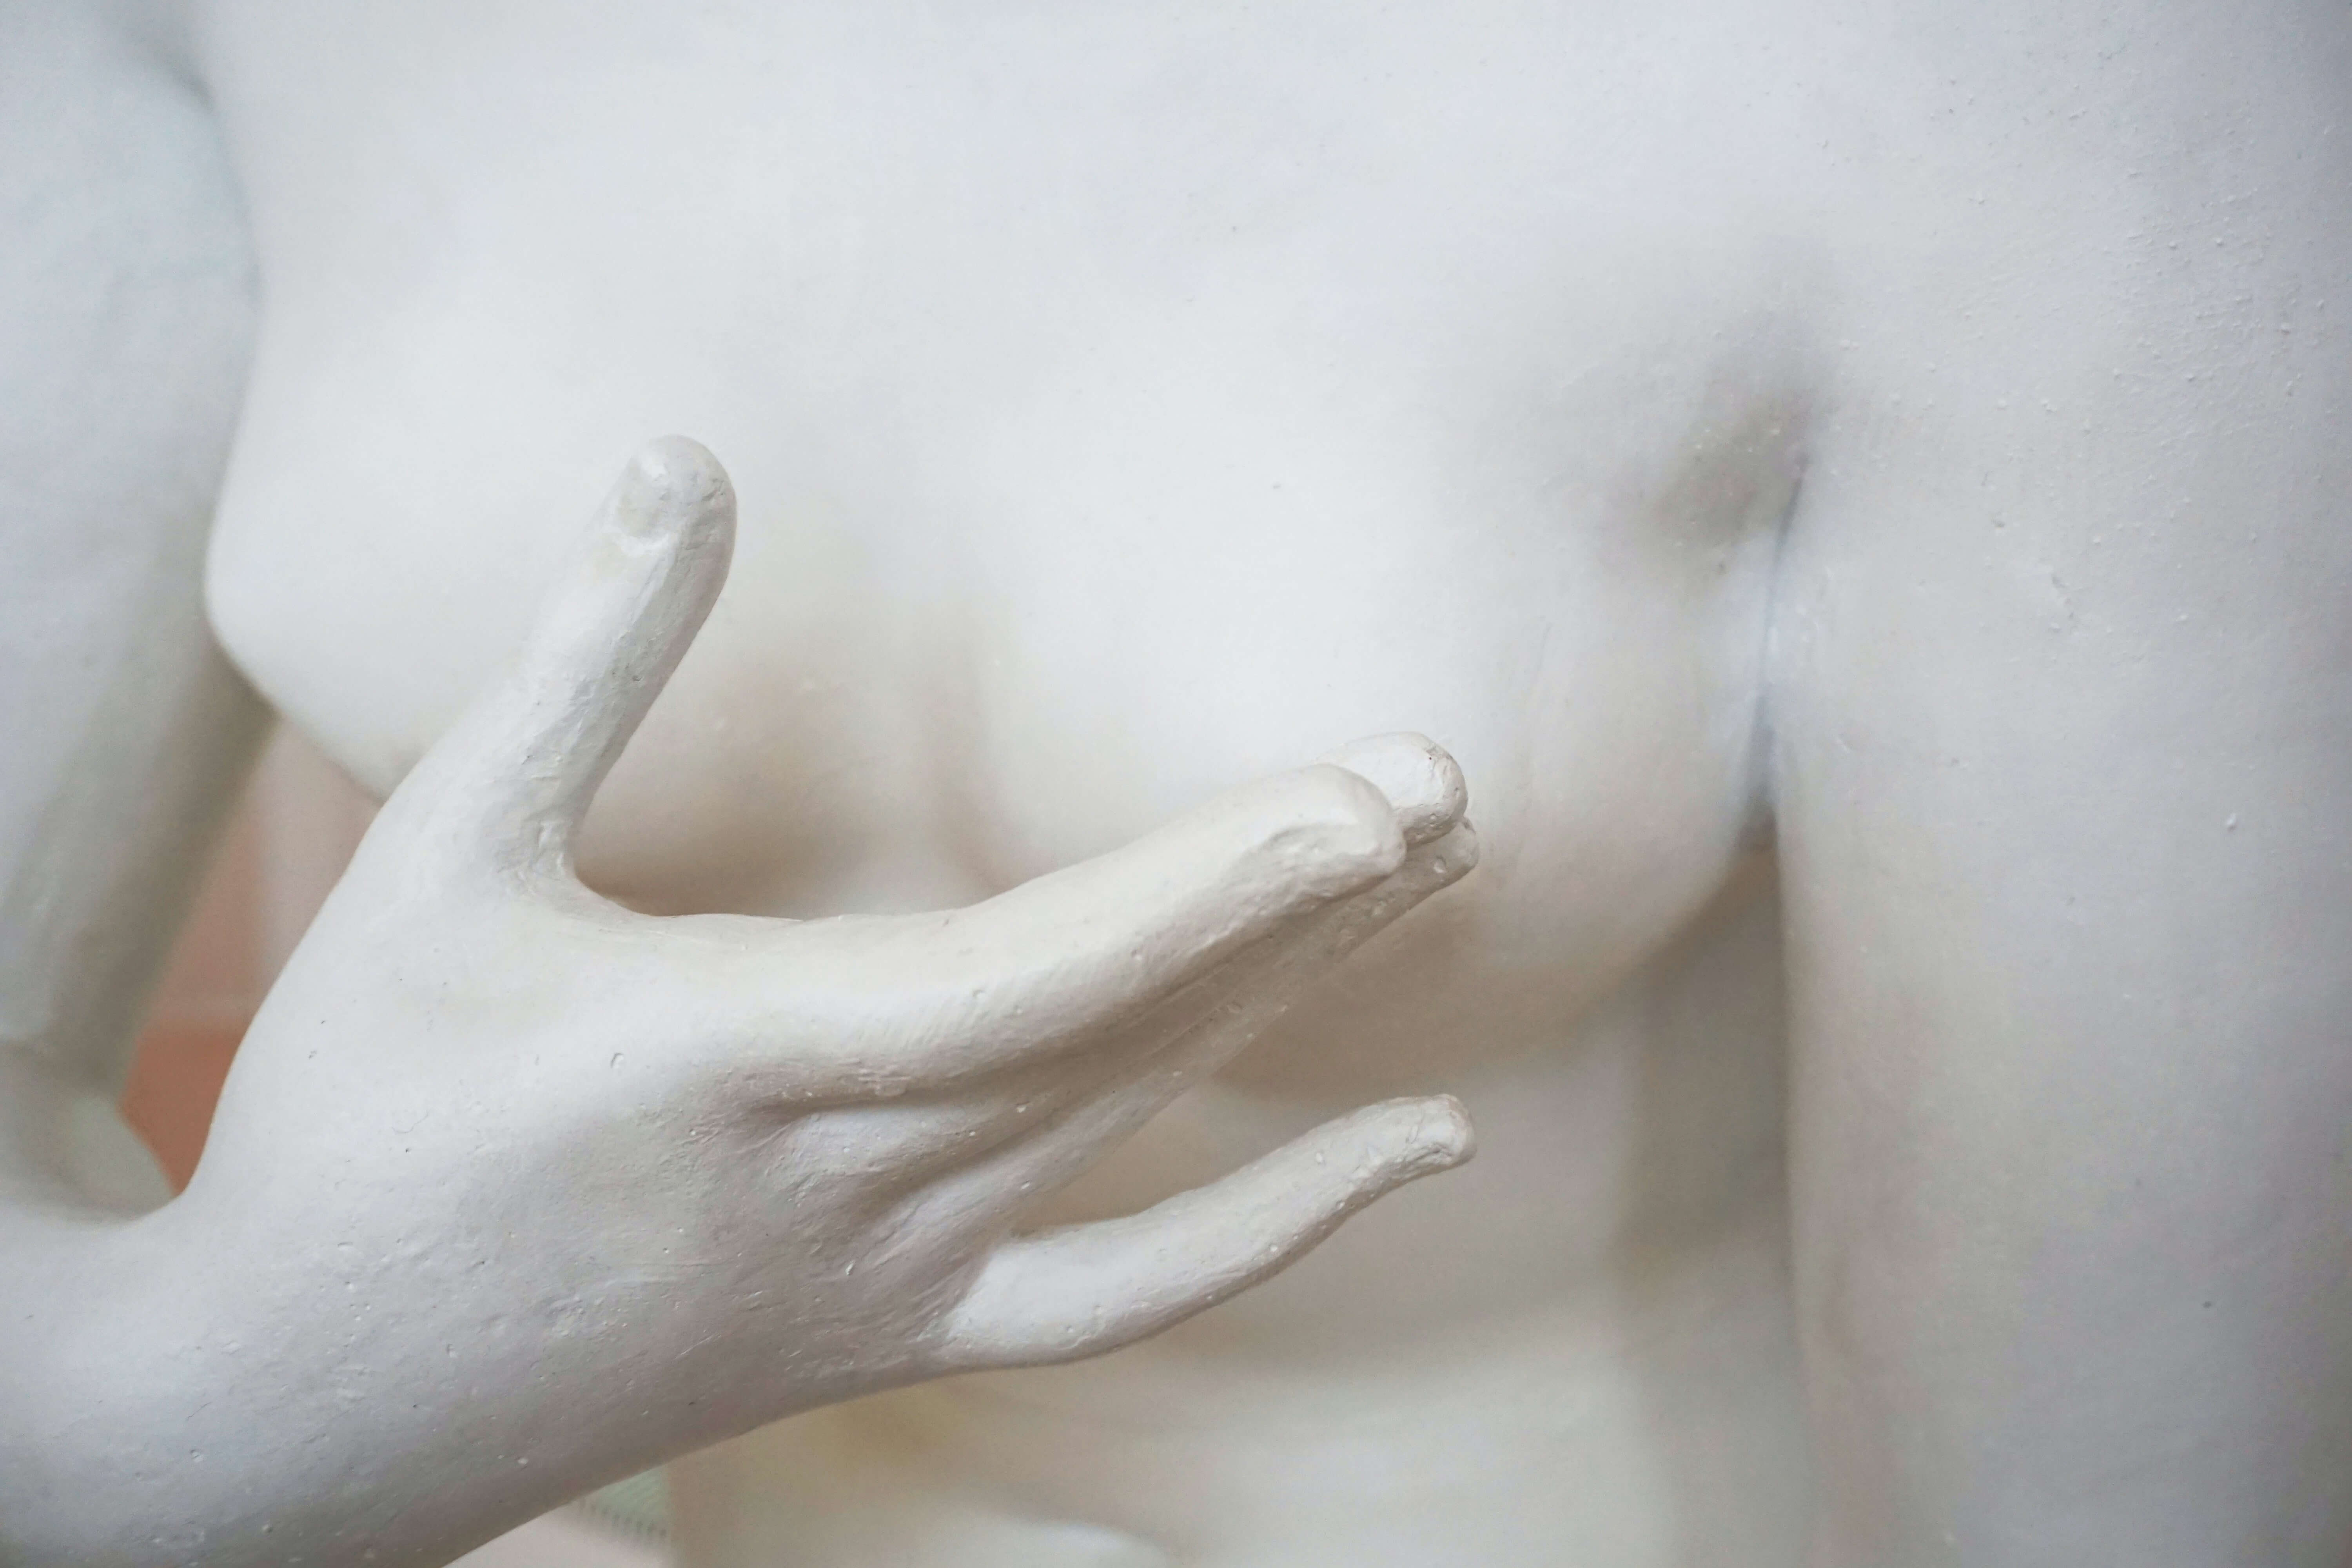 Biała figura zakrywająca dłonią sutek